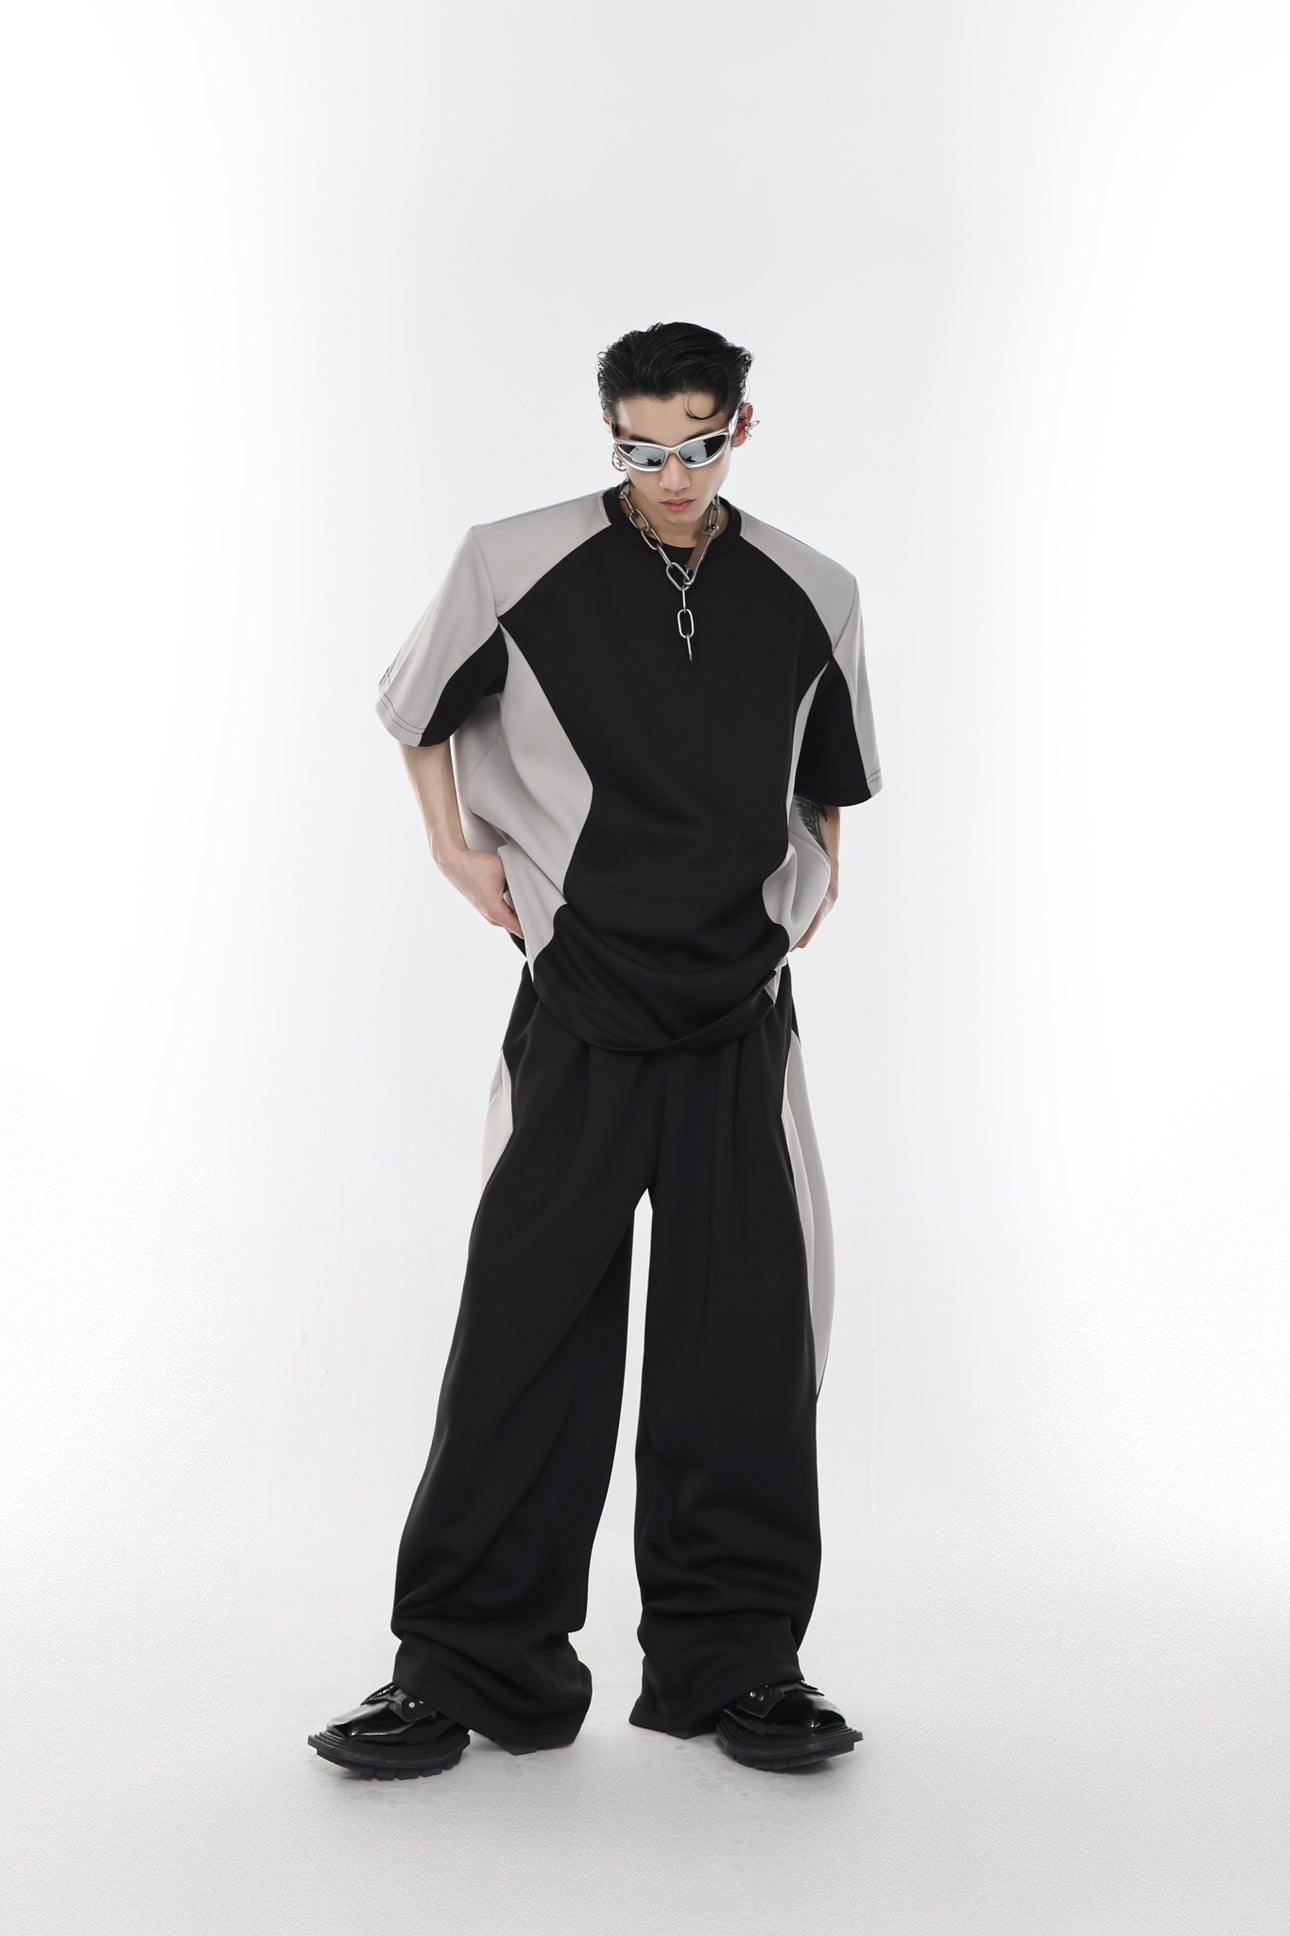 Argue Culture Two Toned T-Shirt & Sports Pants Set Korean Street Fashion Clothing Set By Argue Culture Shop Online at OH Vault